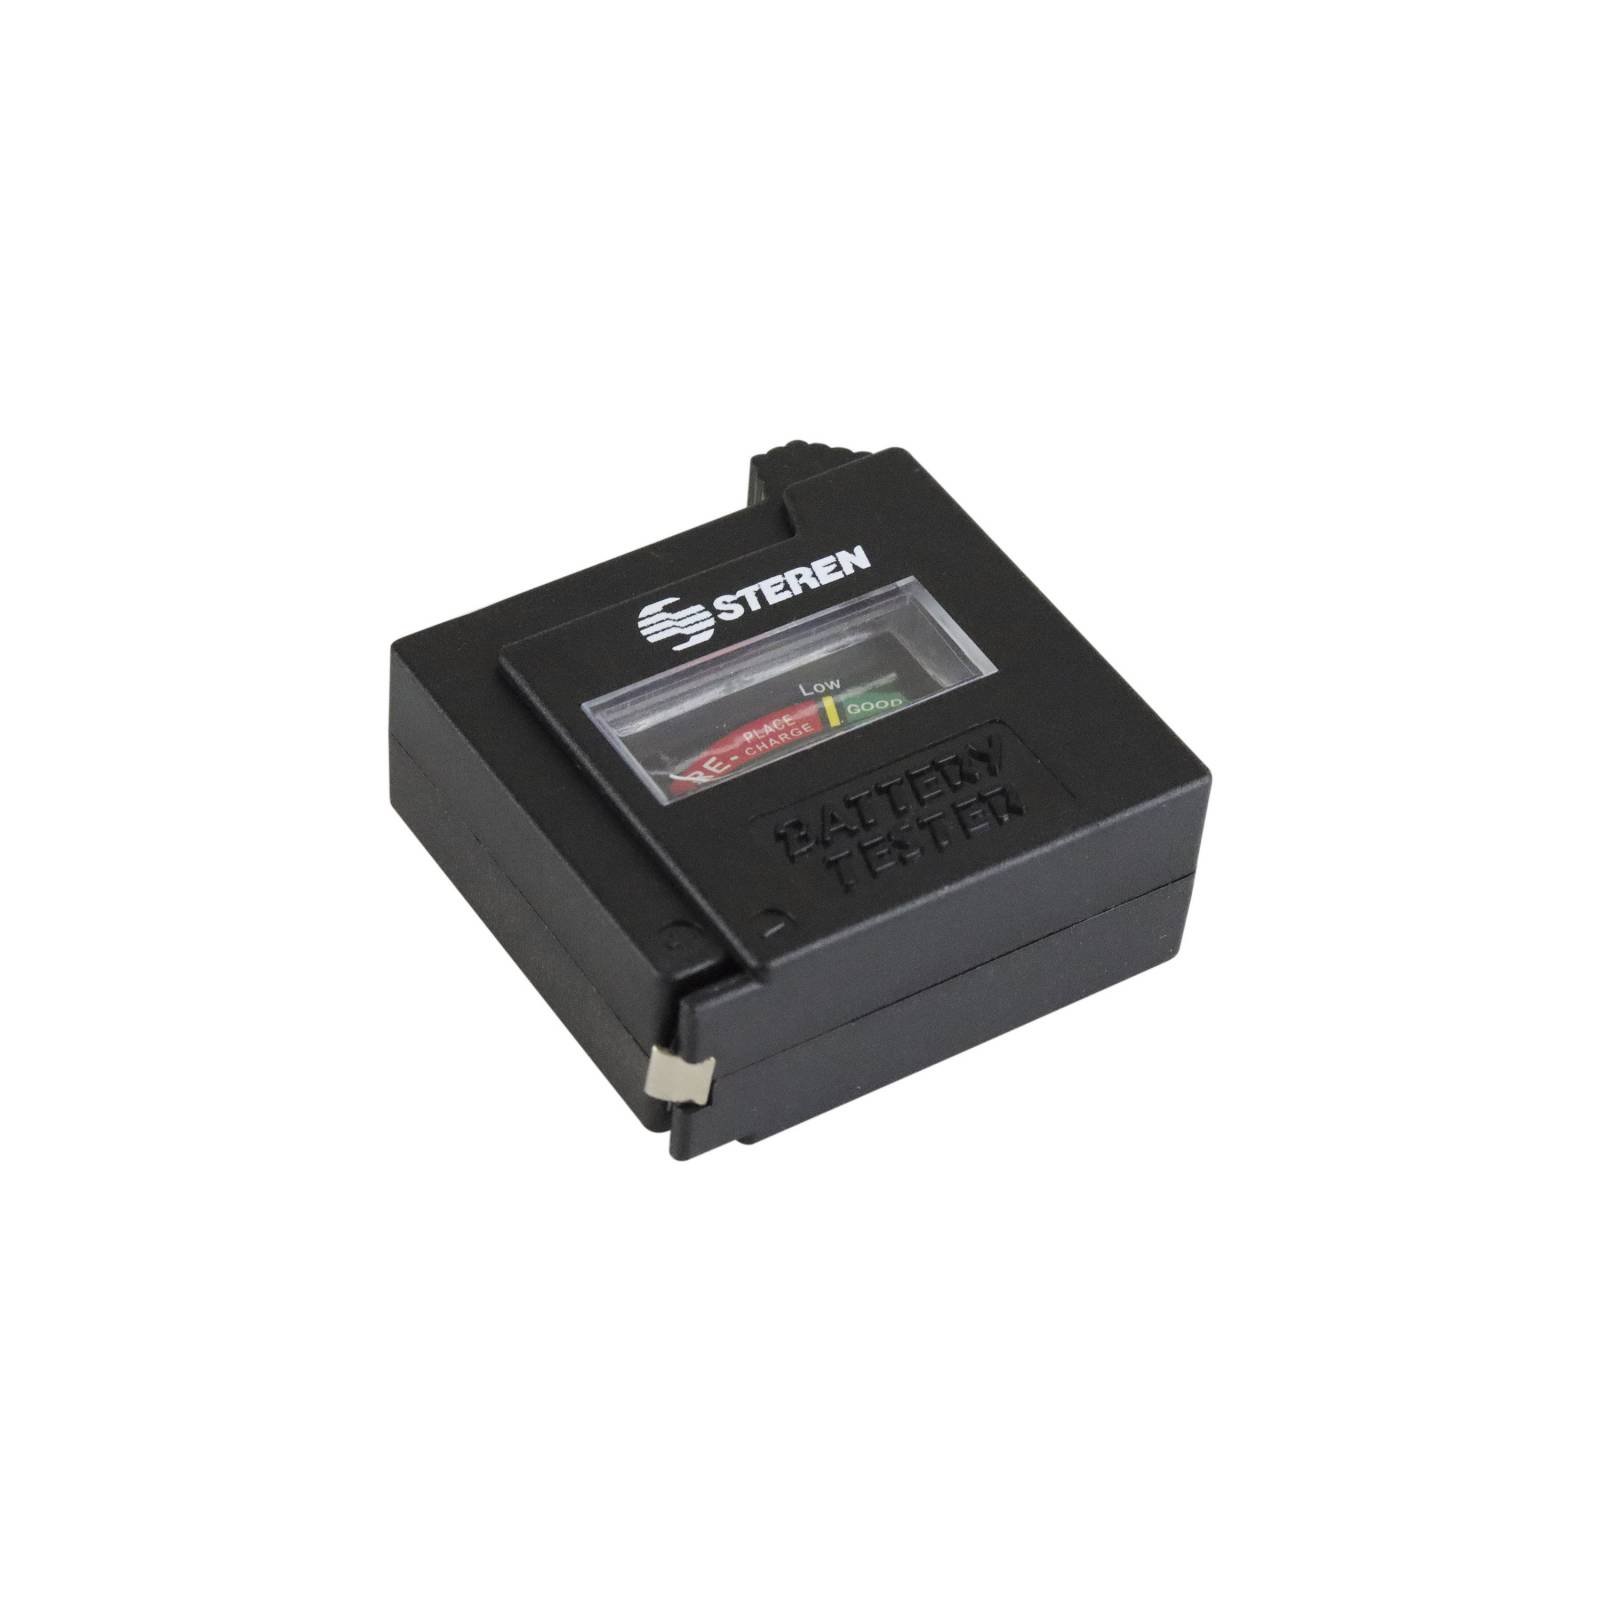 Analizador de probador de carga de batería para pilas de botón AAA AA 9V  Sharpla Comprobador digital volt verificador